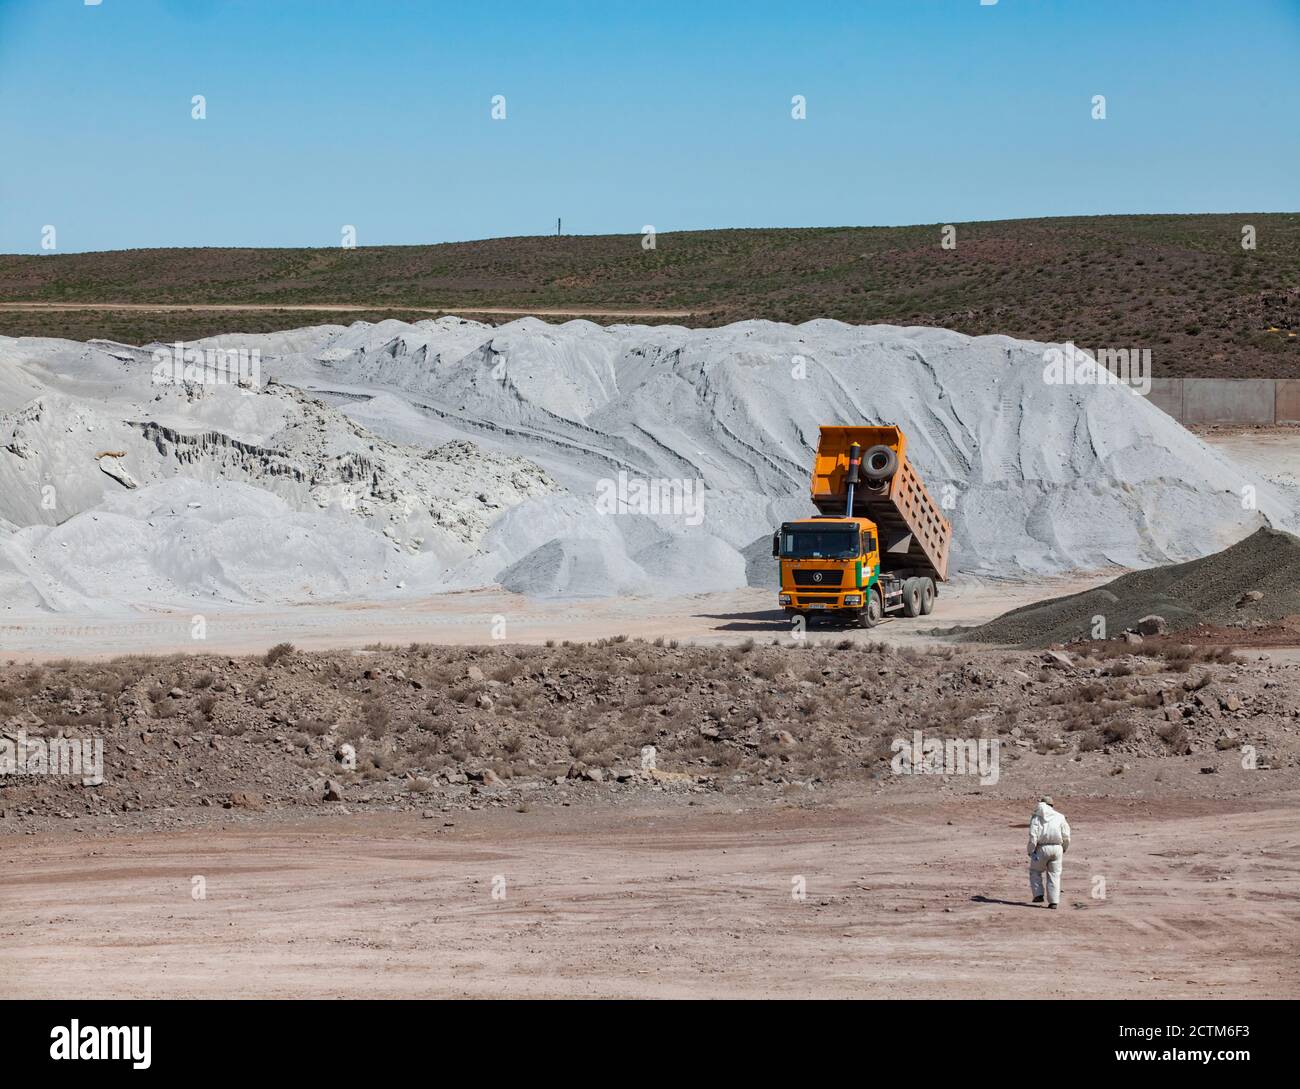 Lagerung von Rohstoffen in der Zementanlage von Jambyl. Haufen von Mineralien (Klinker) und Kipper und Arbeiter in weißen Schutzanzug. Stockfoto